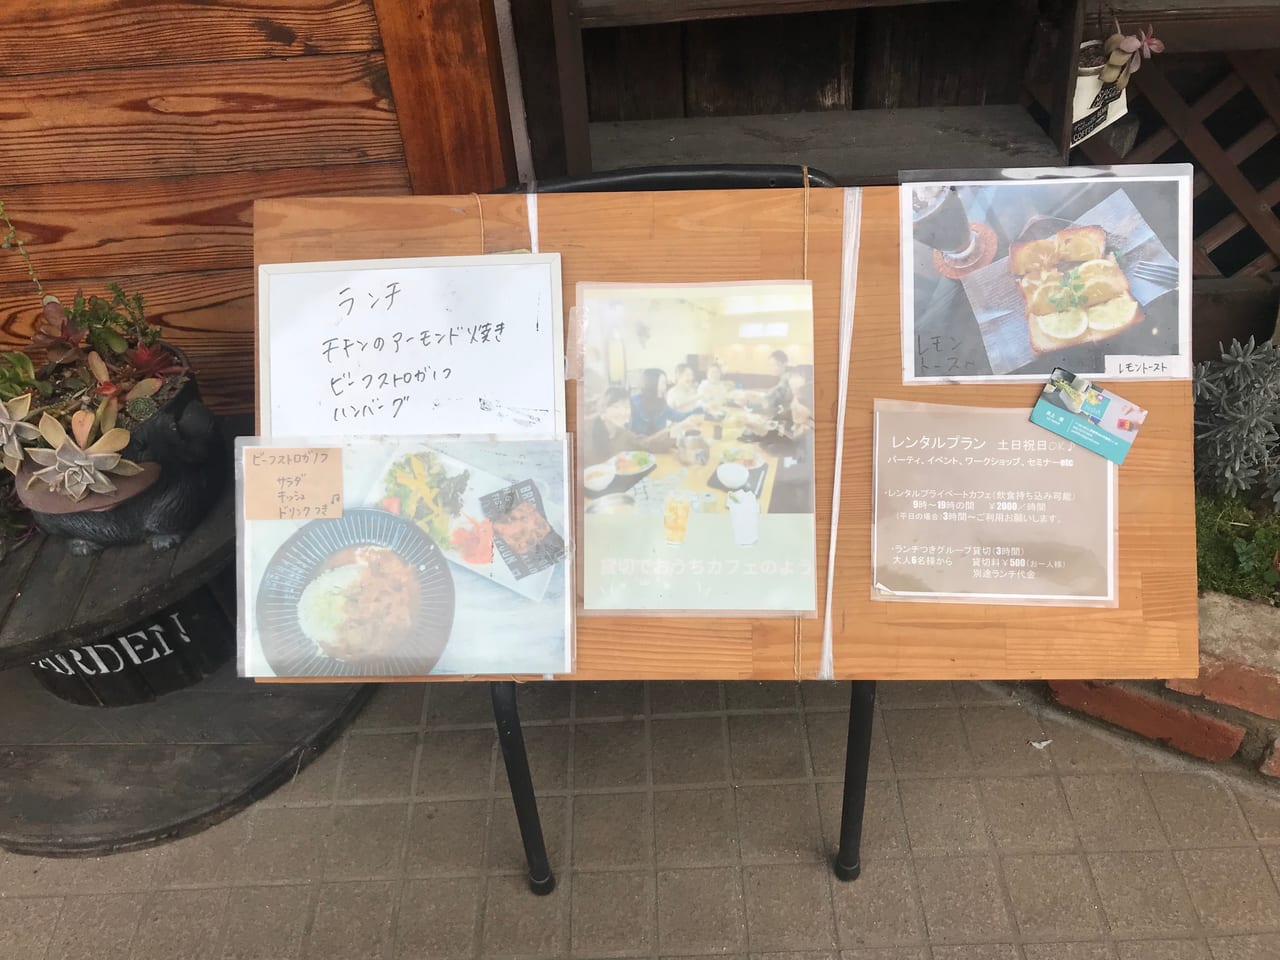 松山市 広いキッズスペースの子連れ歓迎カフェ ハナノイエ に行ってきました 当面はテイクアウトのみの営業です 号外net 松山市 中予地方